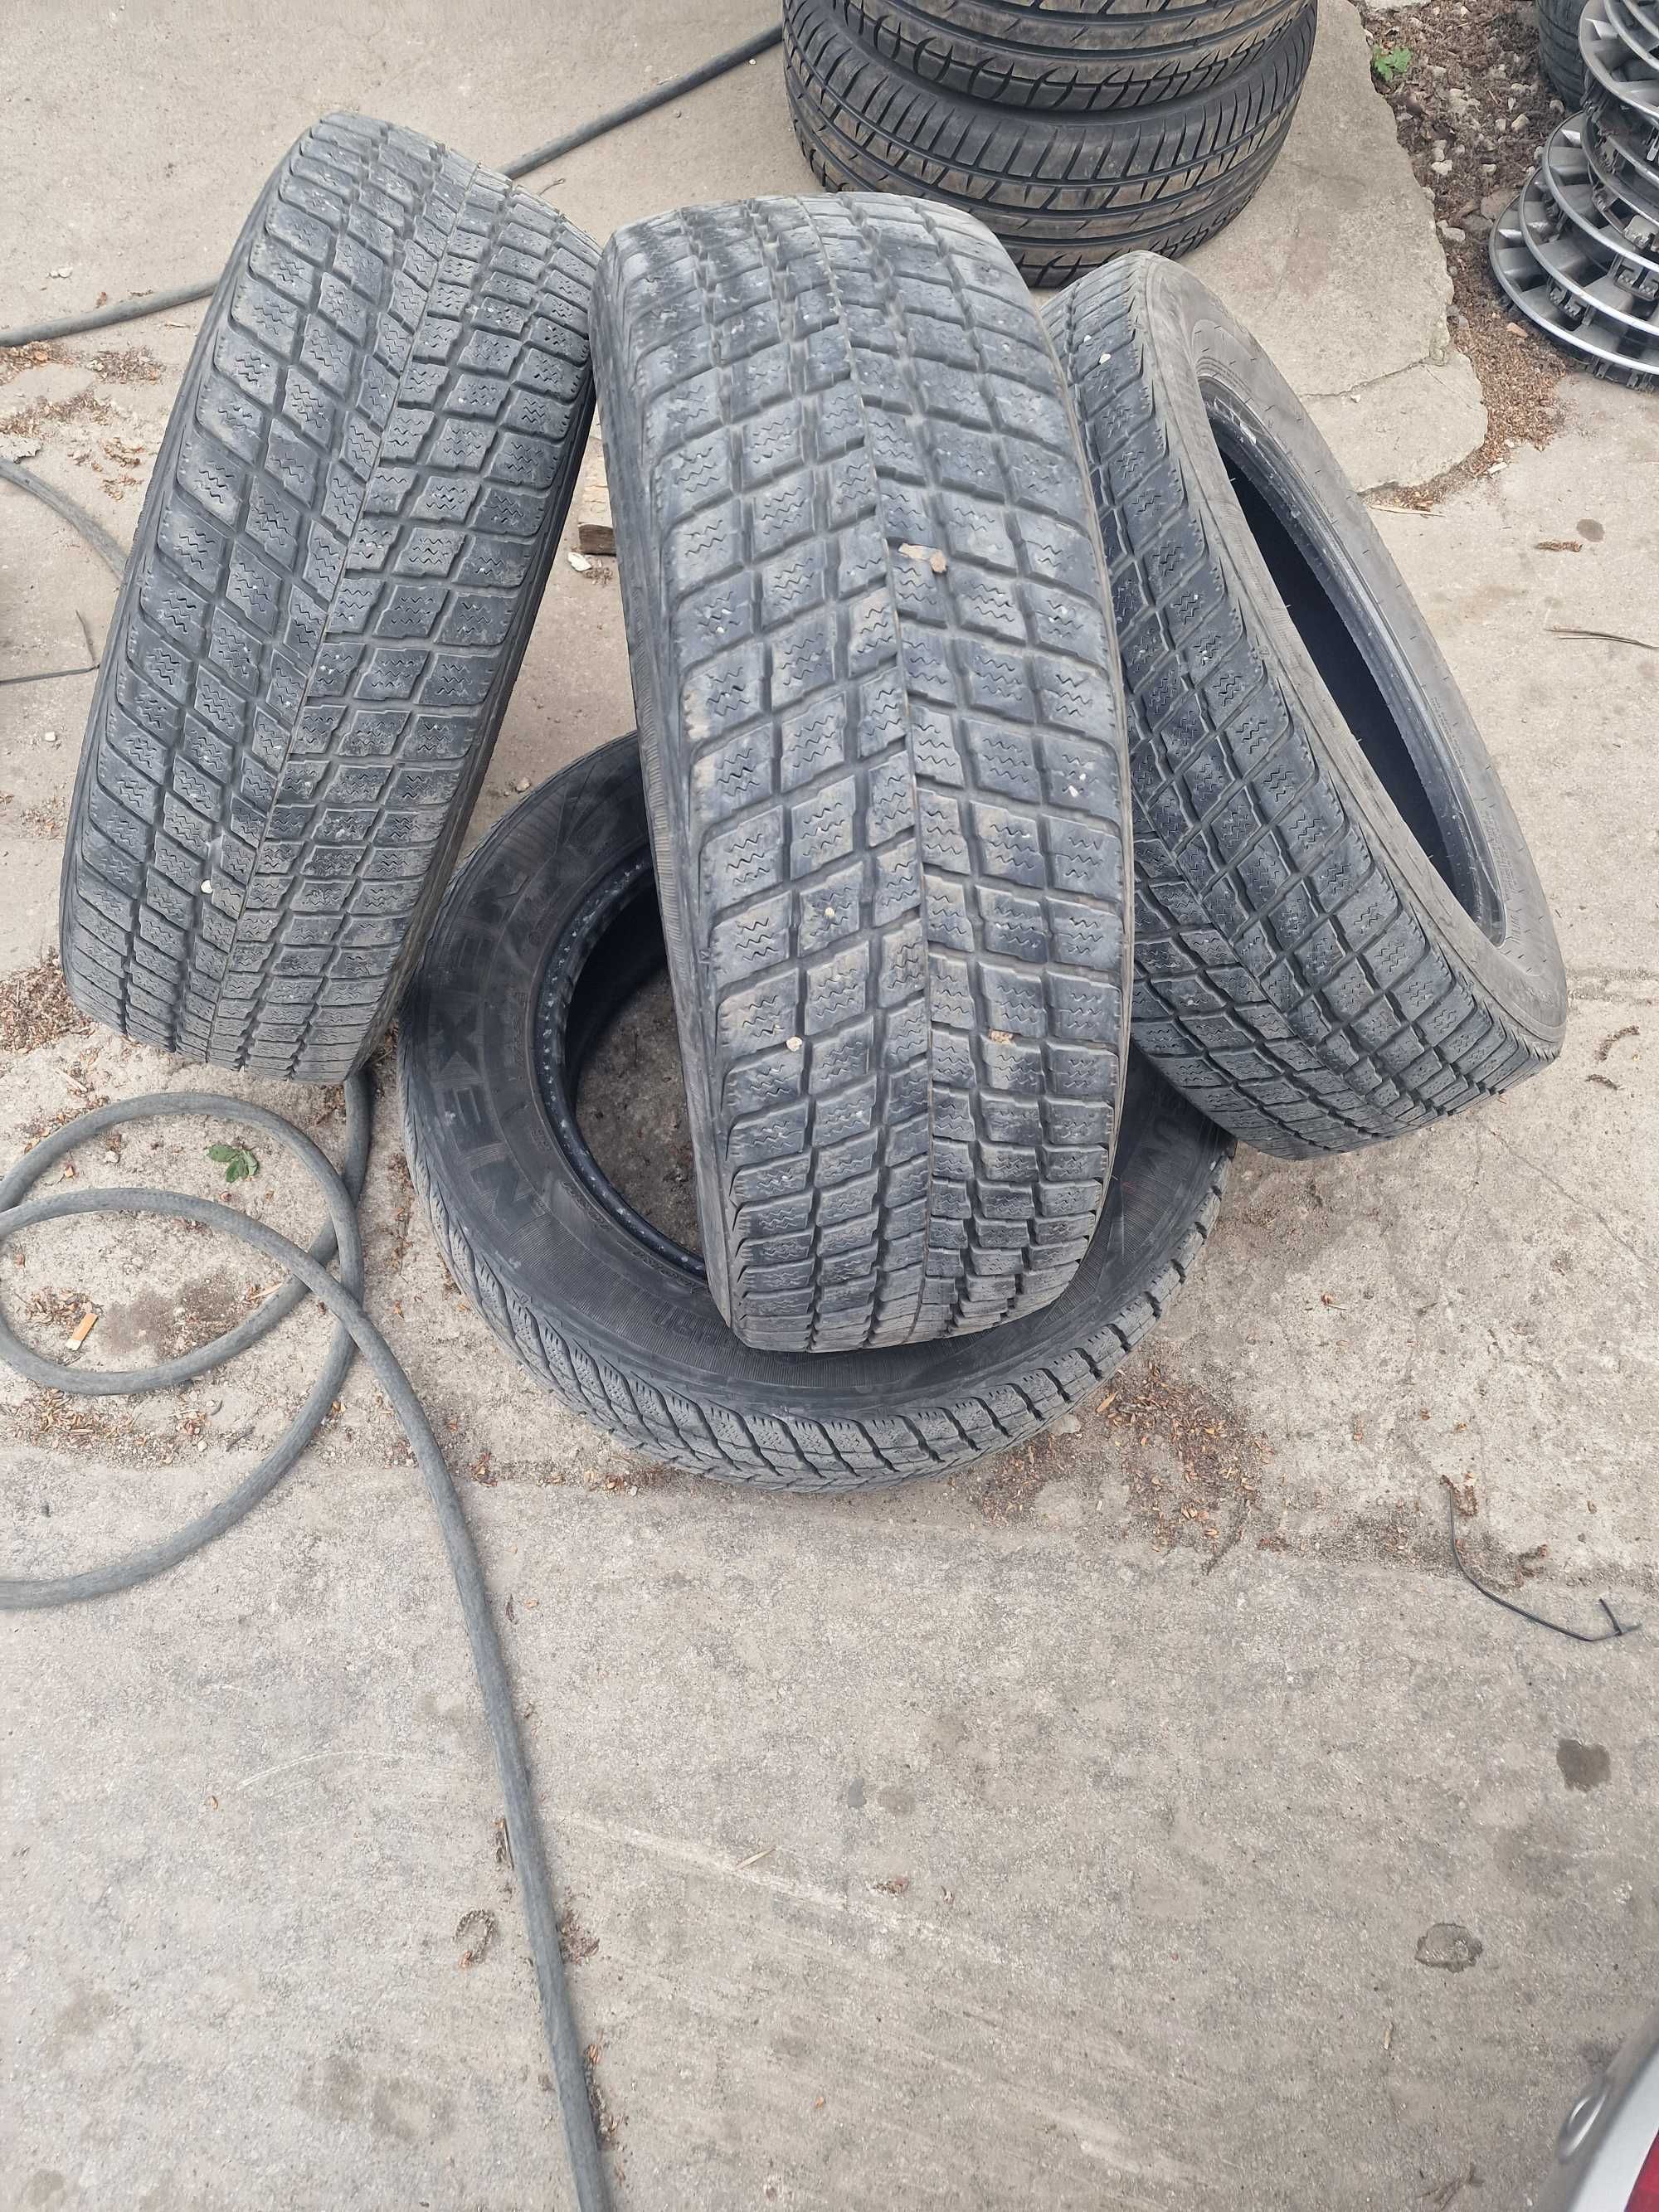 Зимни гуми Nexen за джип 225х60 r17